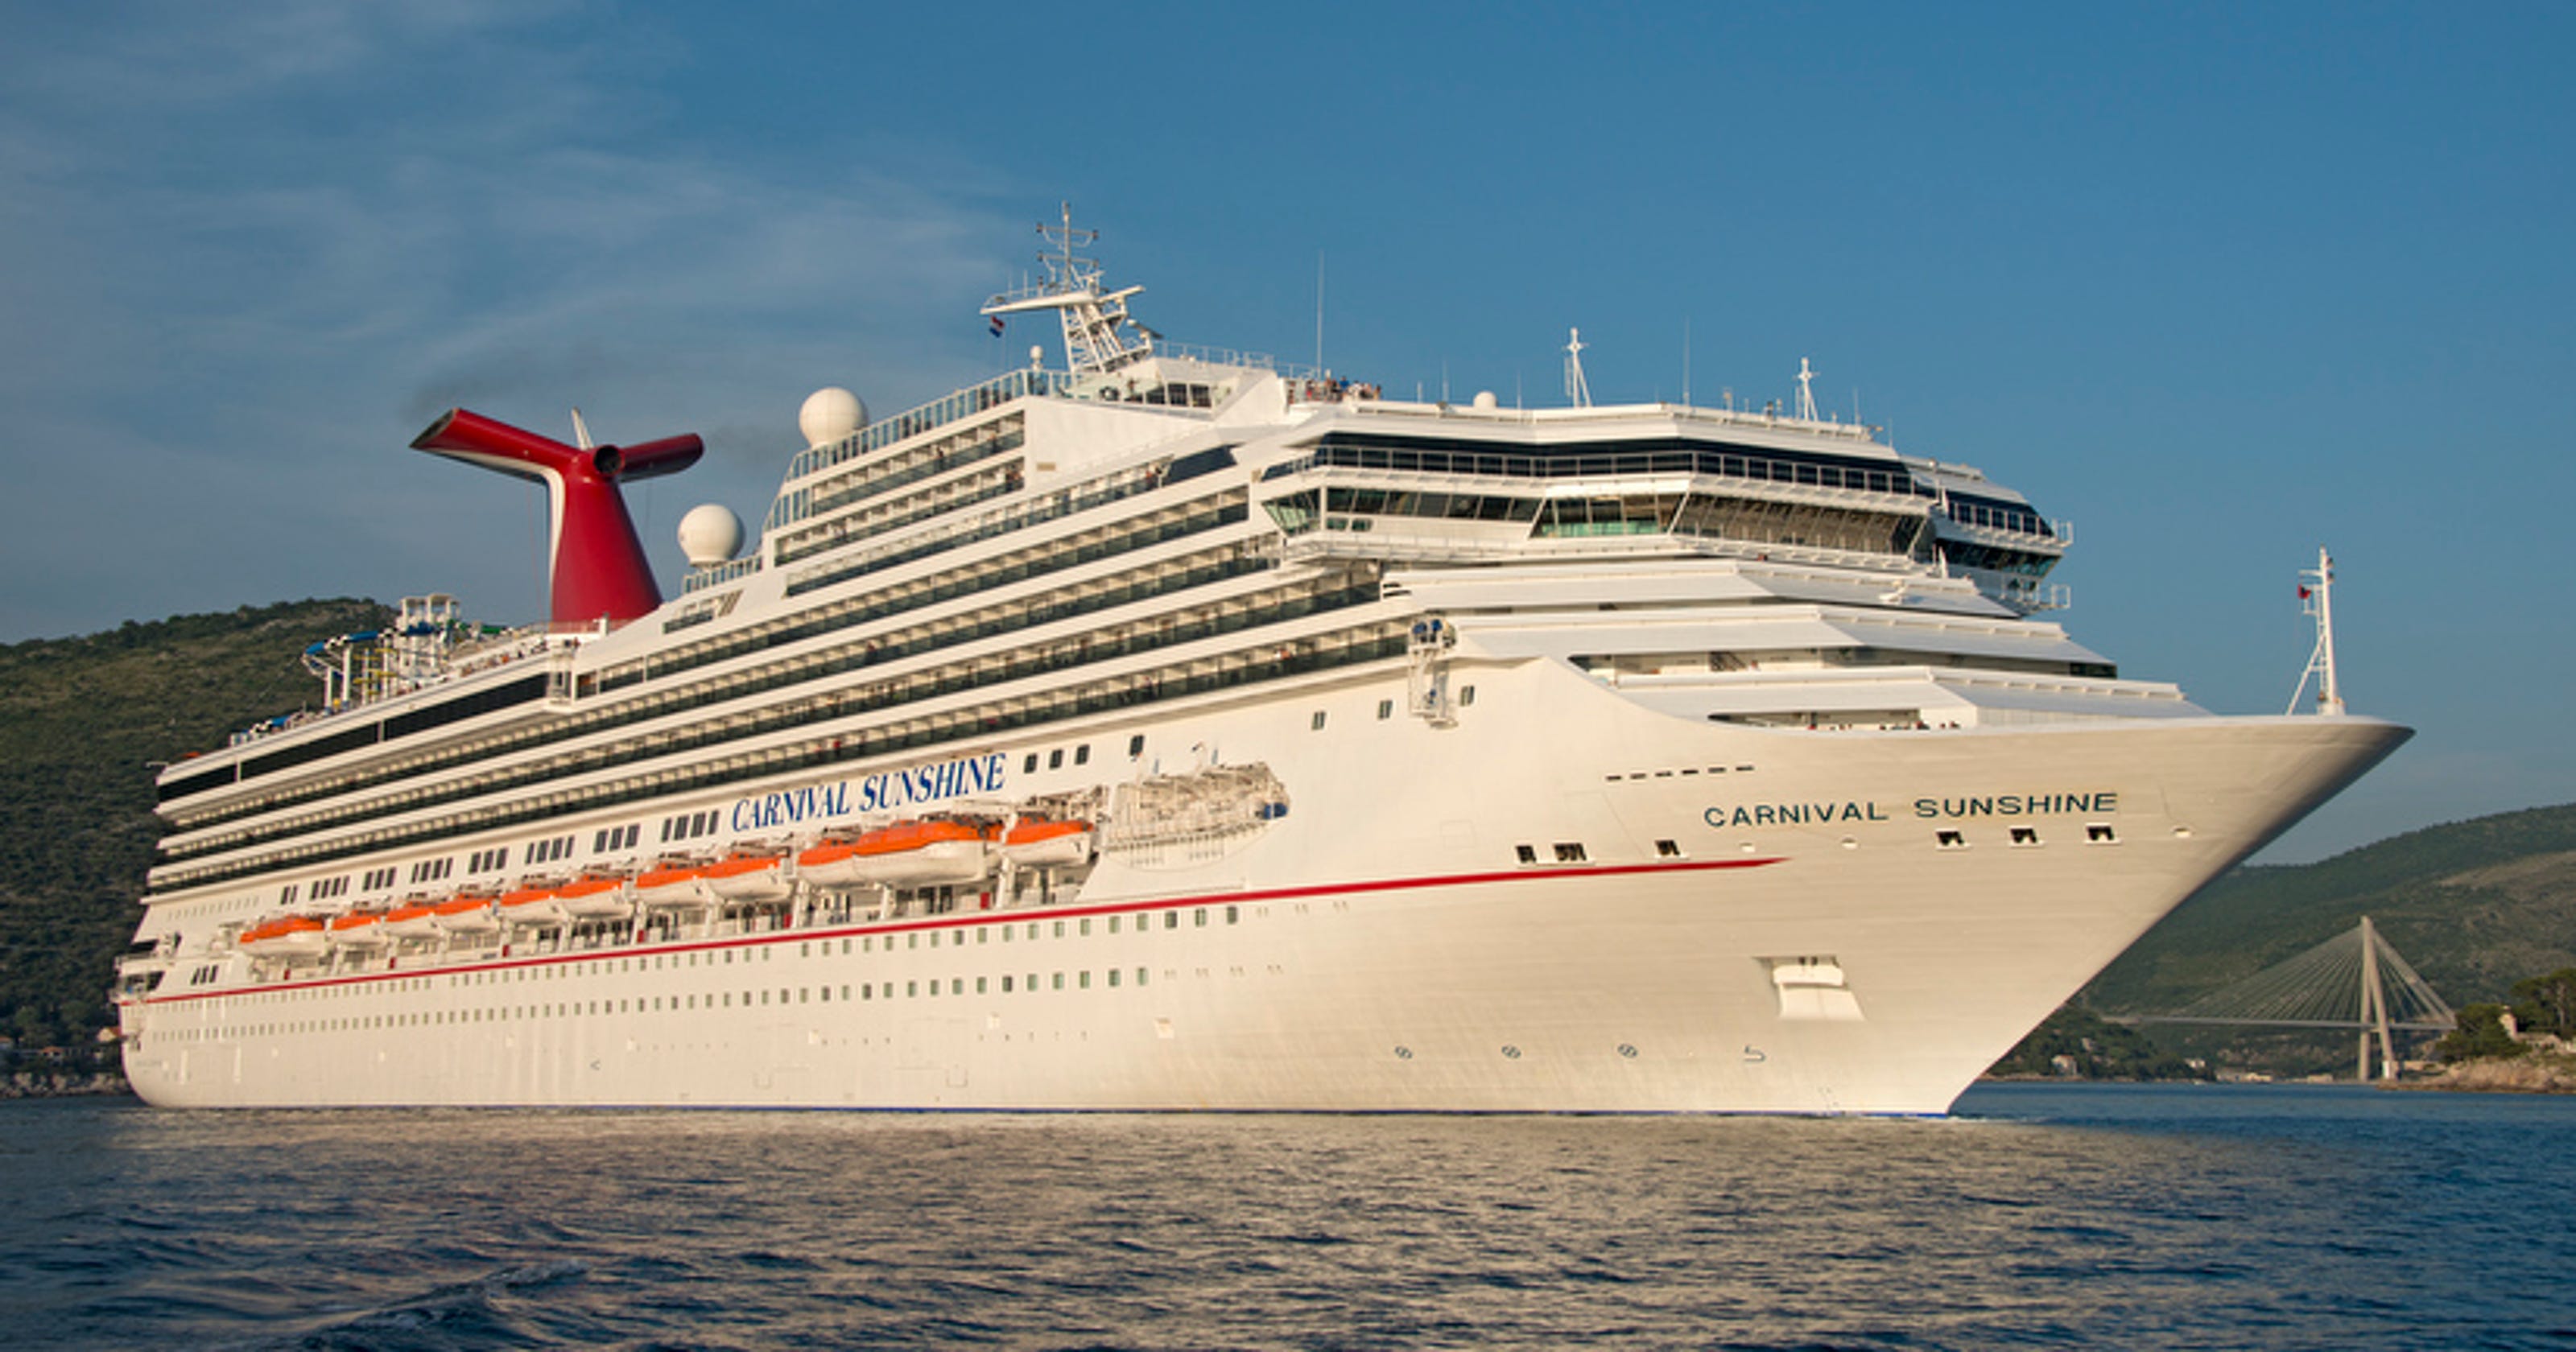 carnival sunshine cruise ship tour